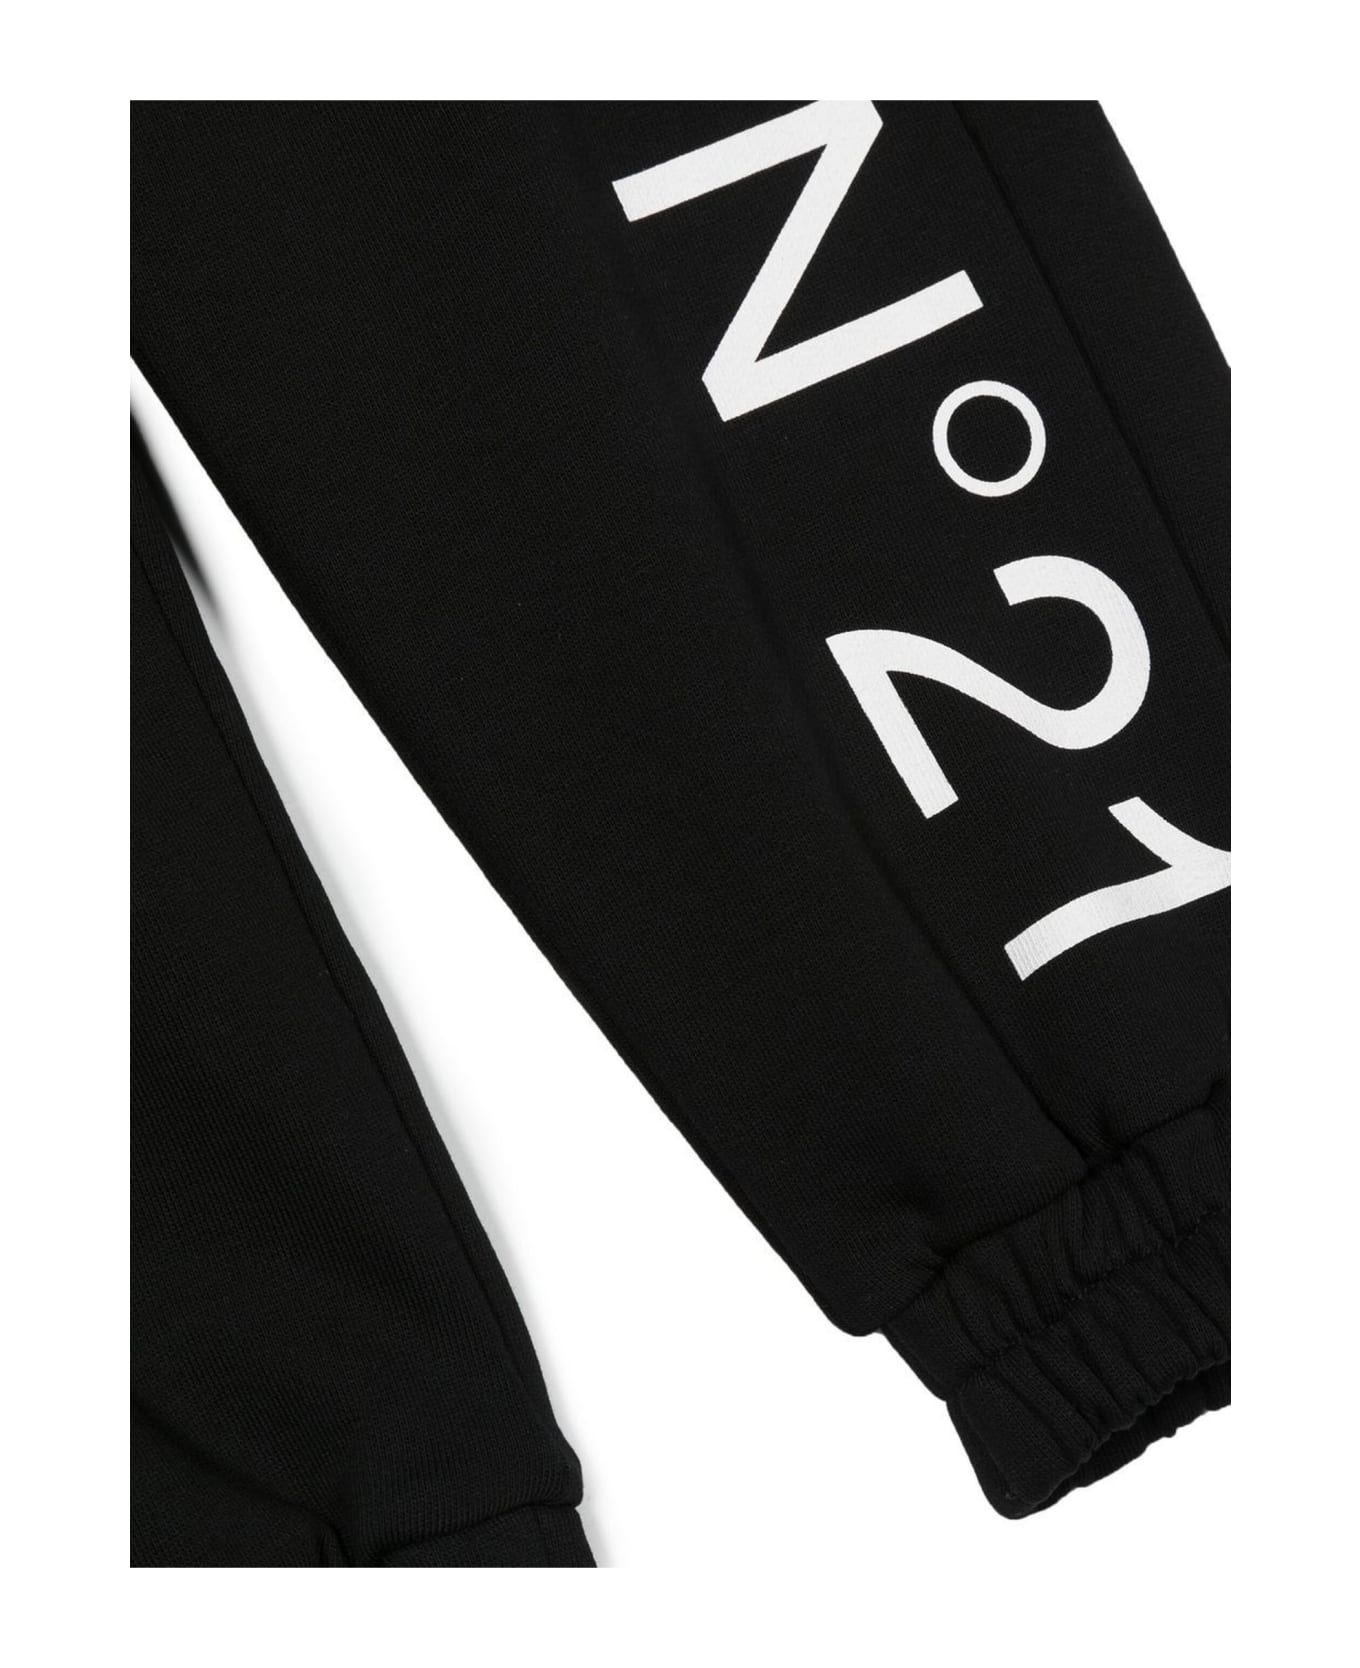 N.21 N°21 Trousers Black - Black